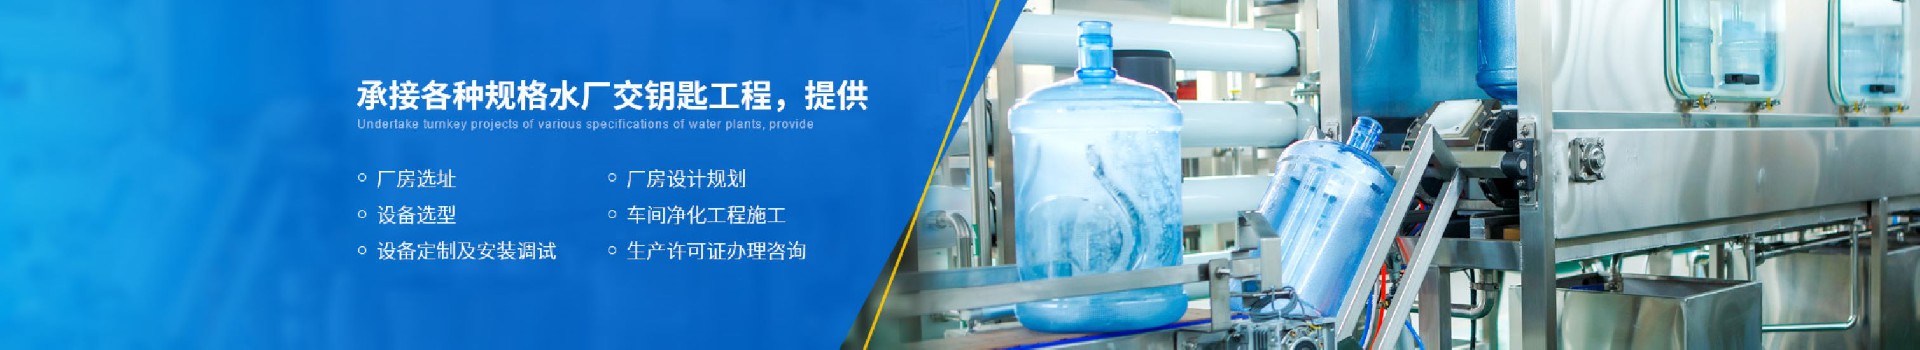 纯水设备下单业务流程-武汉纯水设备厂家 (PC+WAP)-纯净水设备生产销售